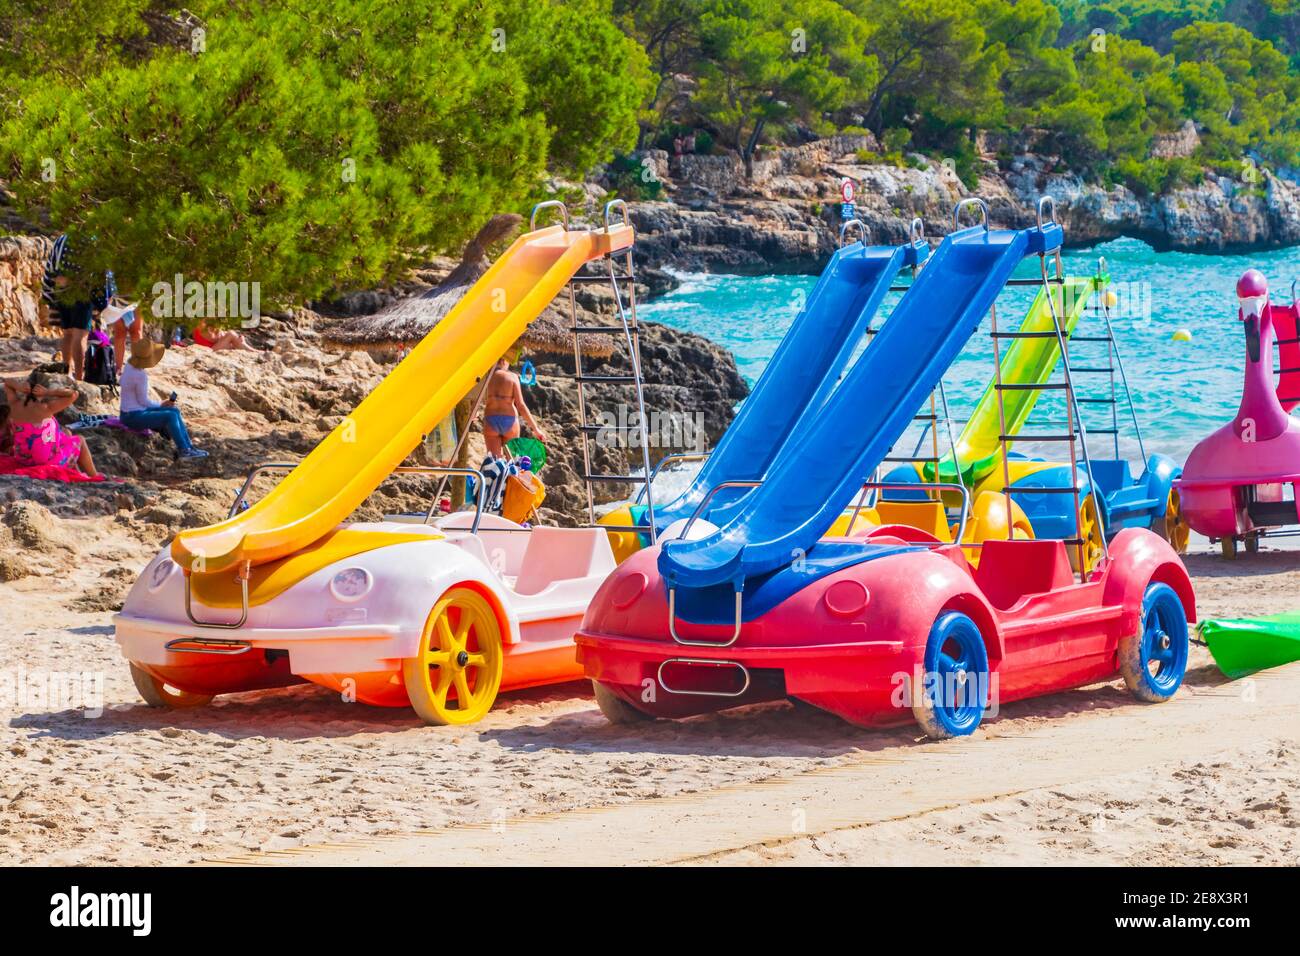 Tretboote mit Rutschen am Strand. Auto Slides in Caló d'en Garott Mallorca  Balearische Inseln Spanien Stockfotografie - Alamy